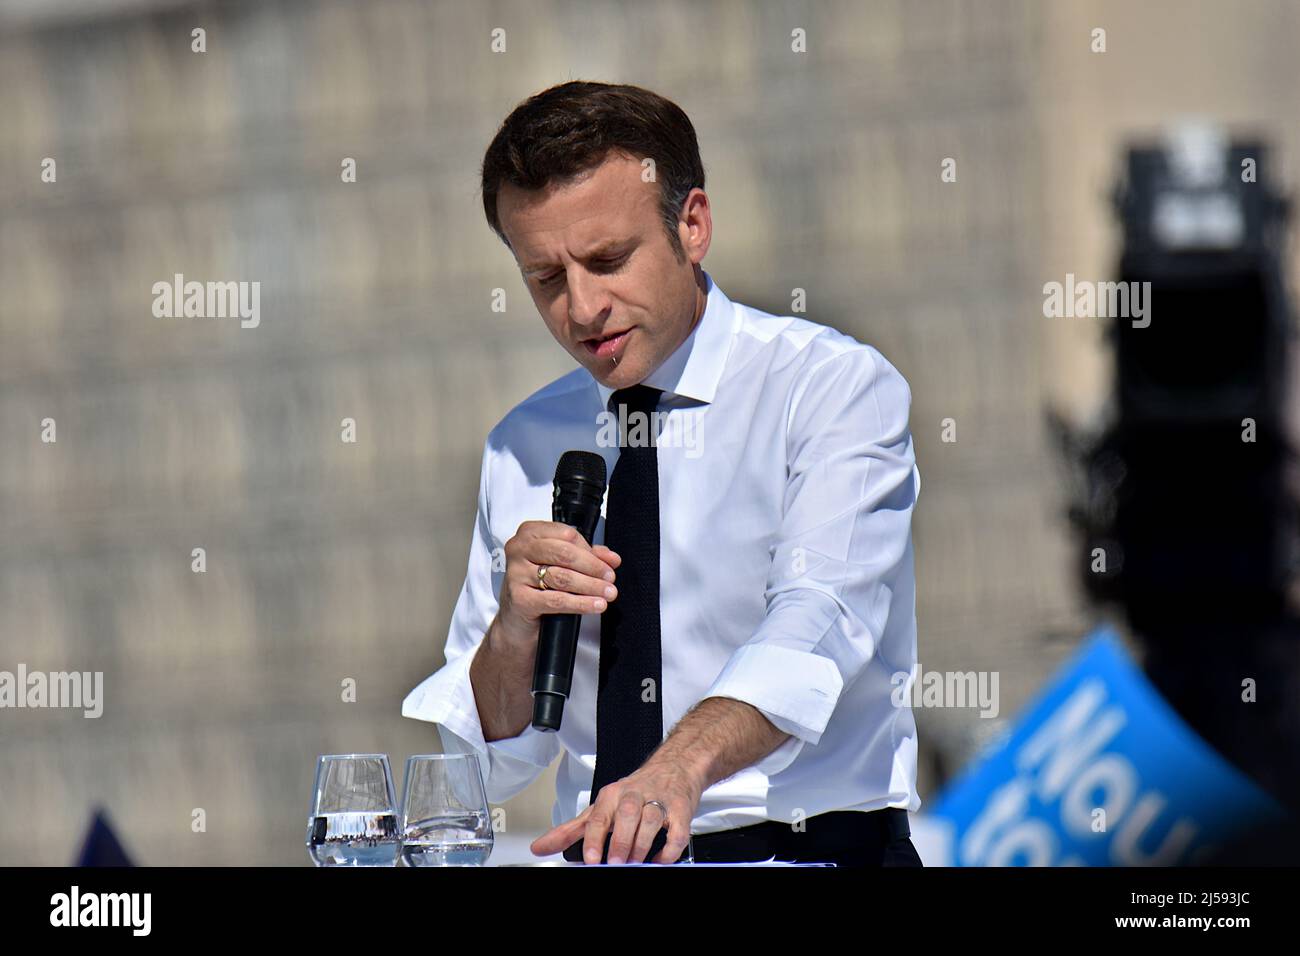 Emmanuel Macron hält während seines politischen Treffens Reden. Der französische Präsident Emmanuel Macron, Kandidat für die Präsidentschaftswahl der 'La Republique en Marche' (LREM), hatte eine öffentliche Sitzung in Marseille. Die zweite Runde der französischen Präsidentschaftswahlen soll am 24. April stattfinden. Stockfoto